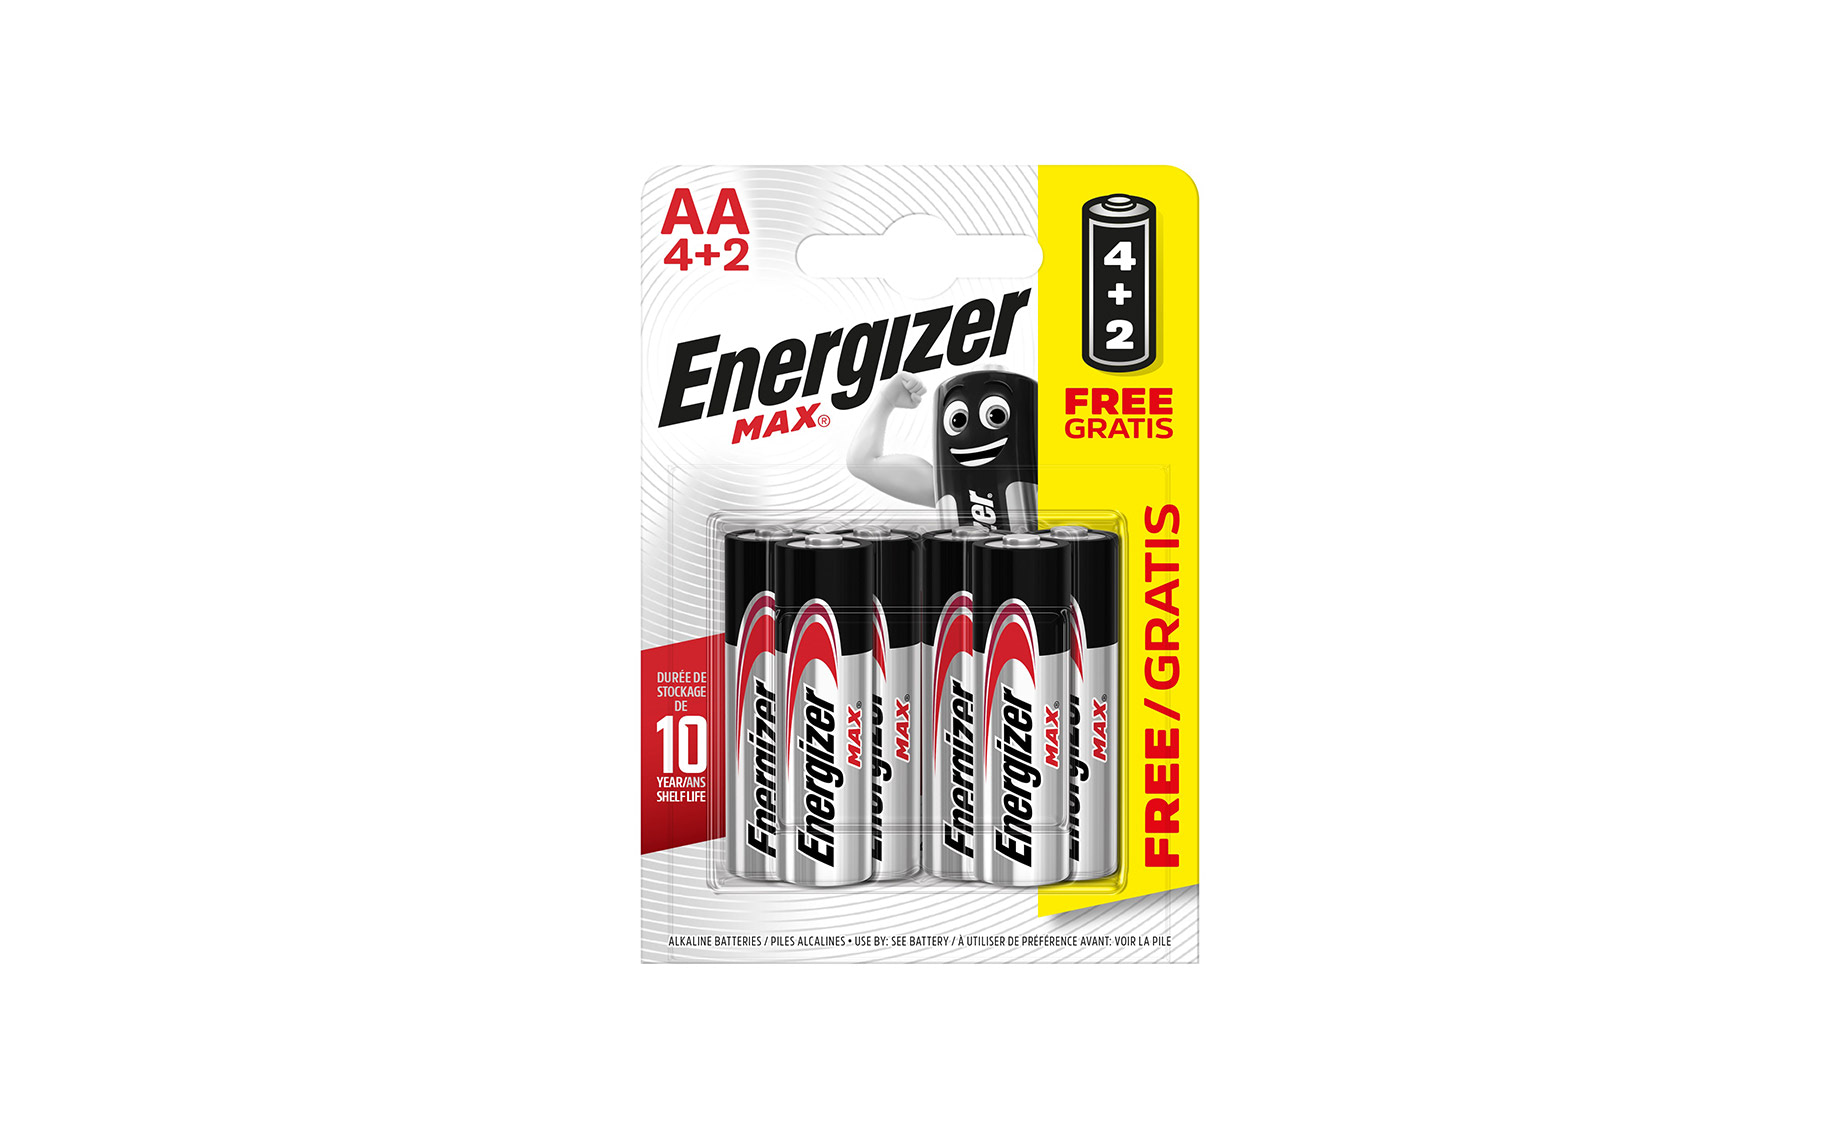 Energizer Max AA LR 6 4+2 baterije